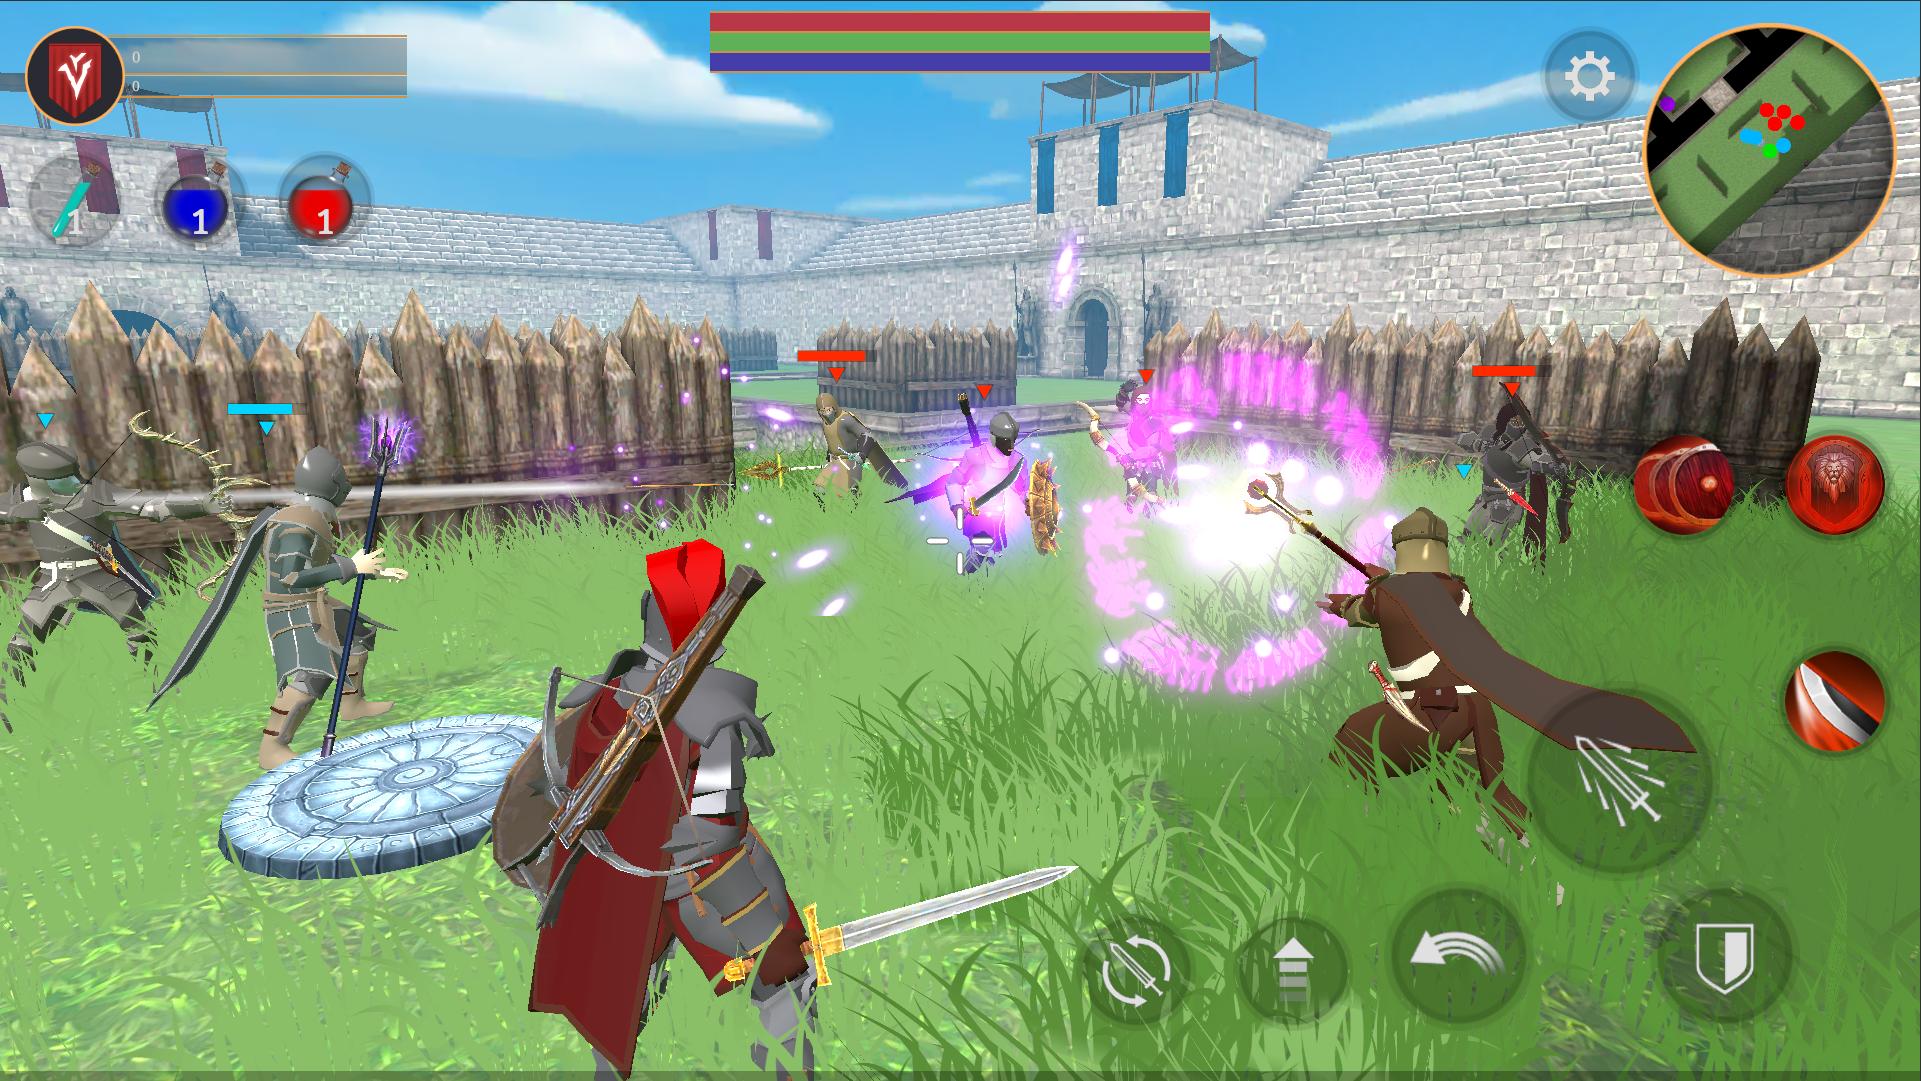 Combat Magic: Spells and Swords 0.21.64a Screenshot 4